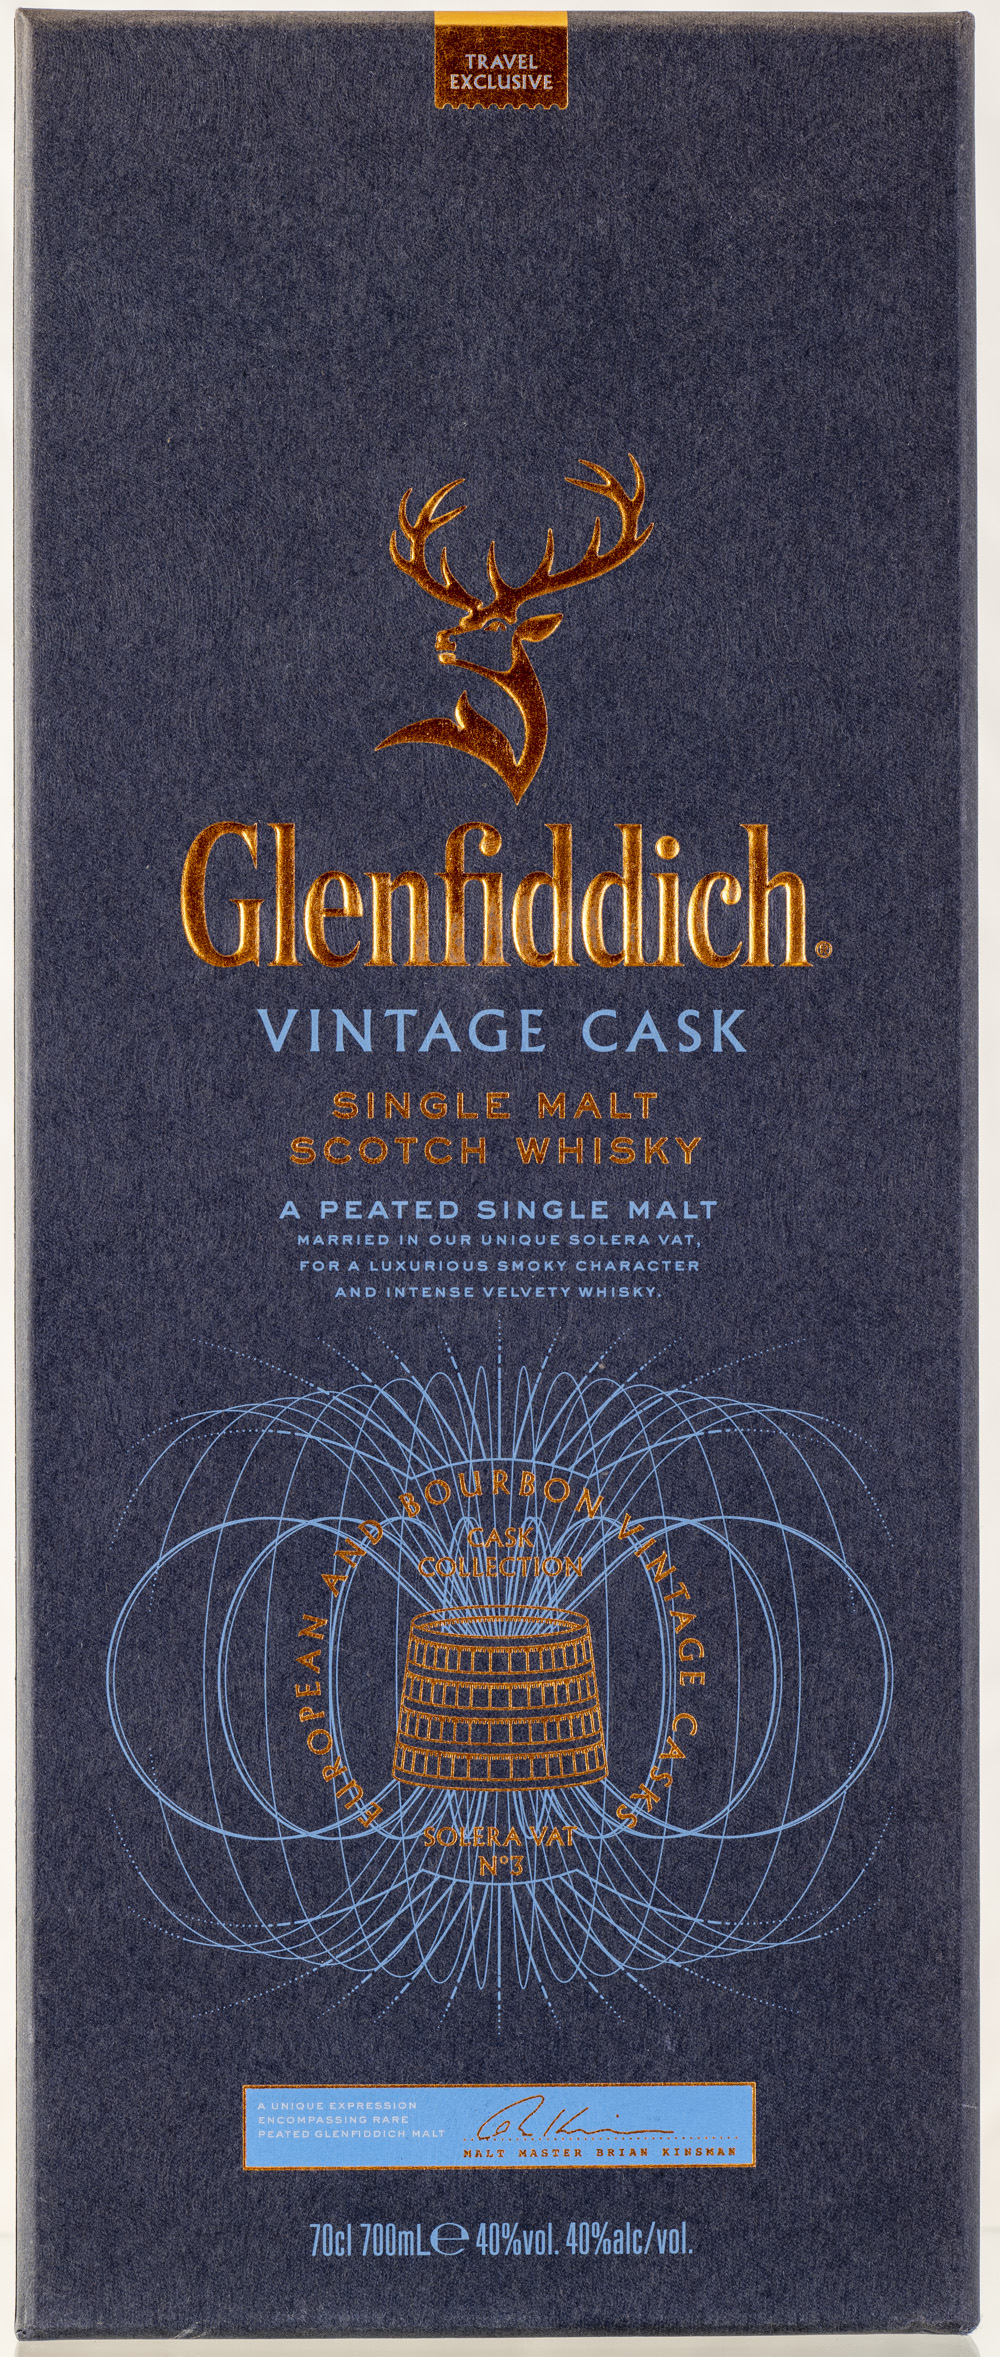 Billede: PHC_2210 - Glenfiddich Vintage Cask Peated - box front.jpg